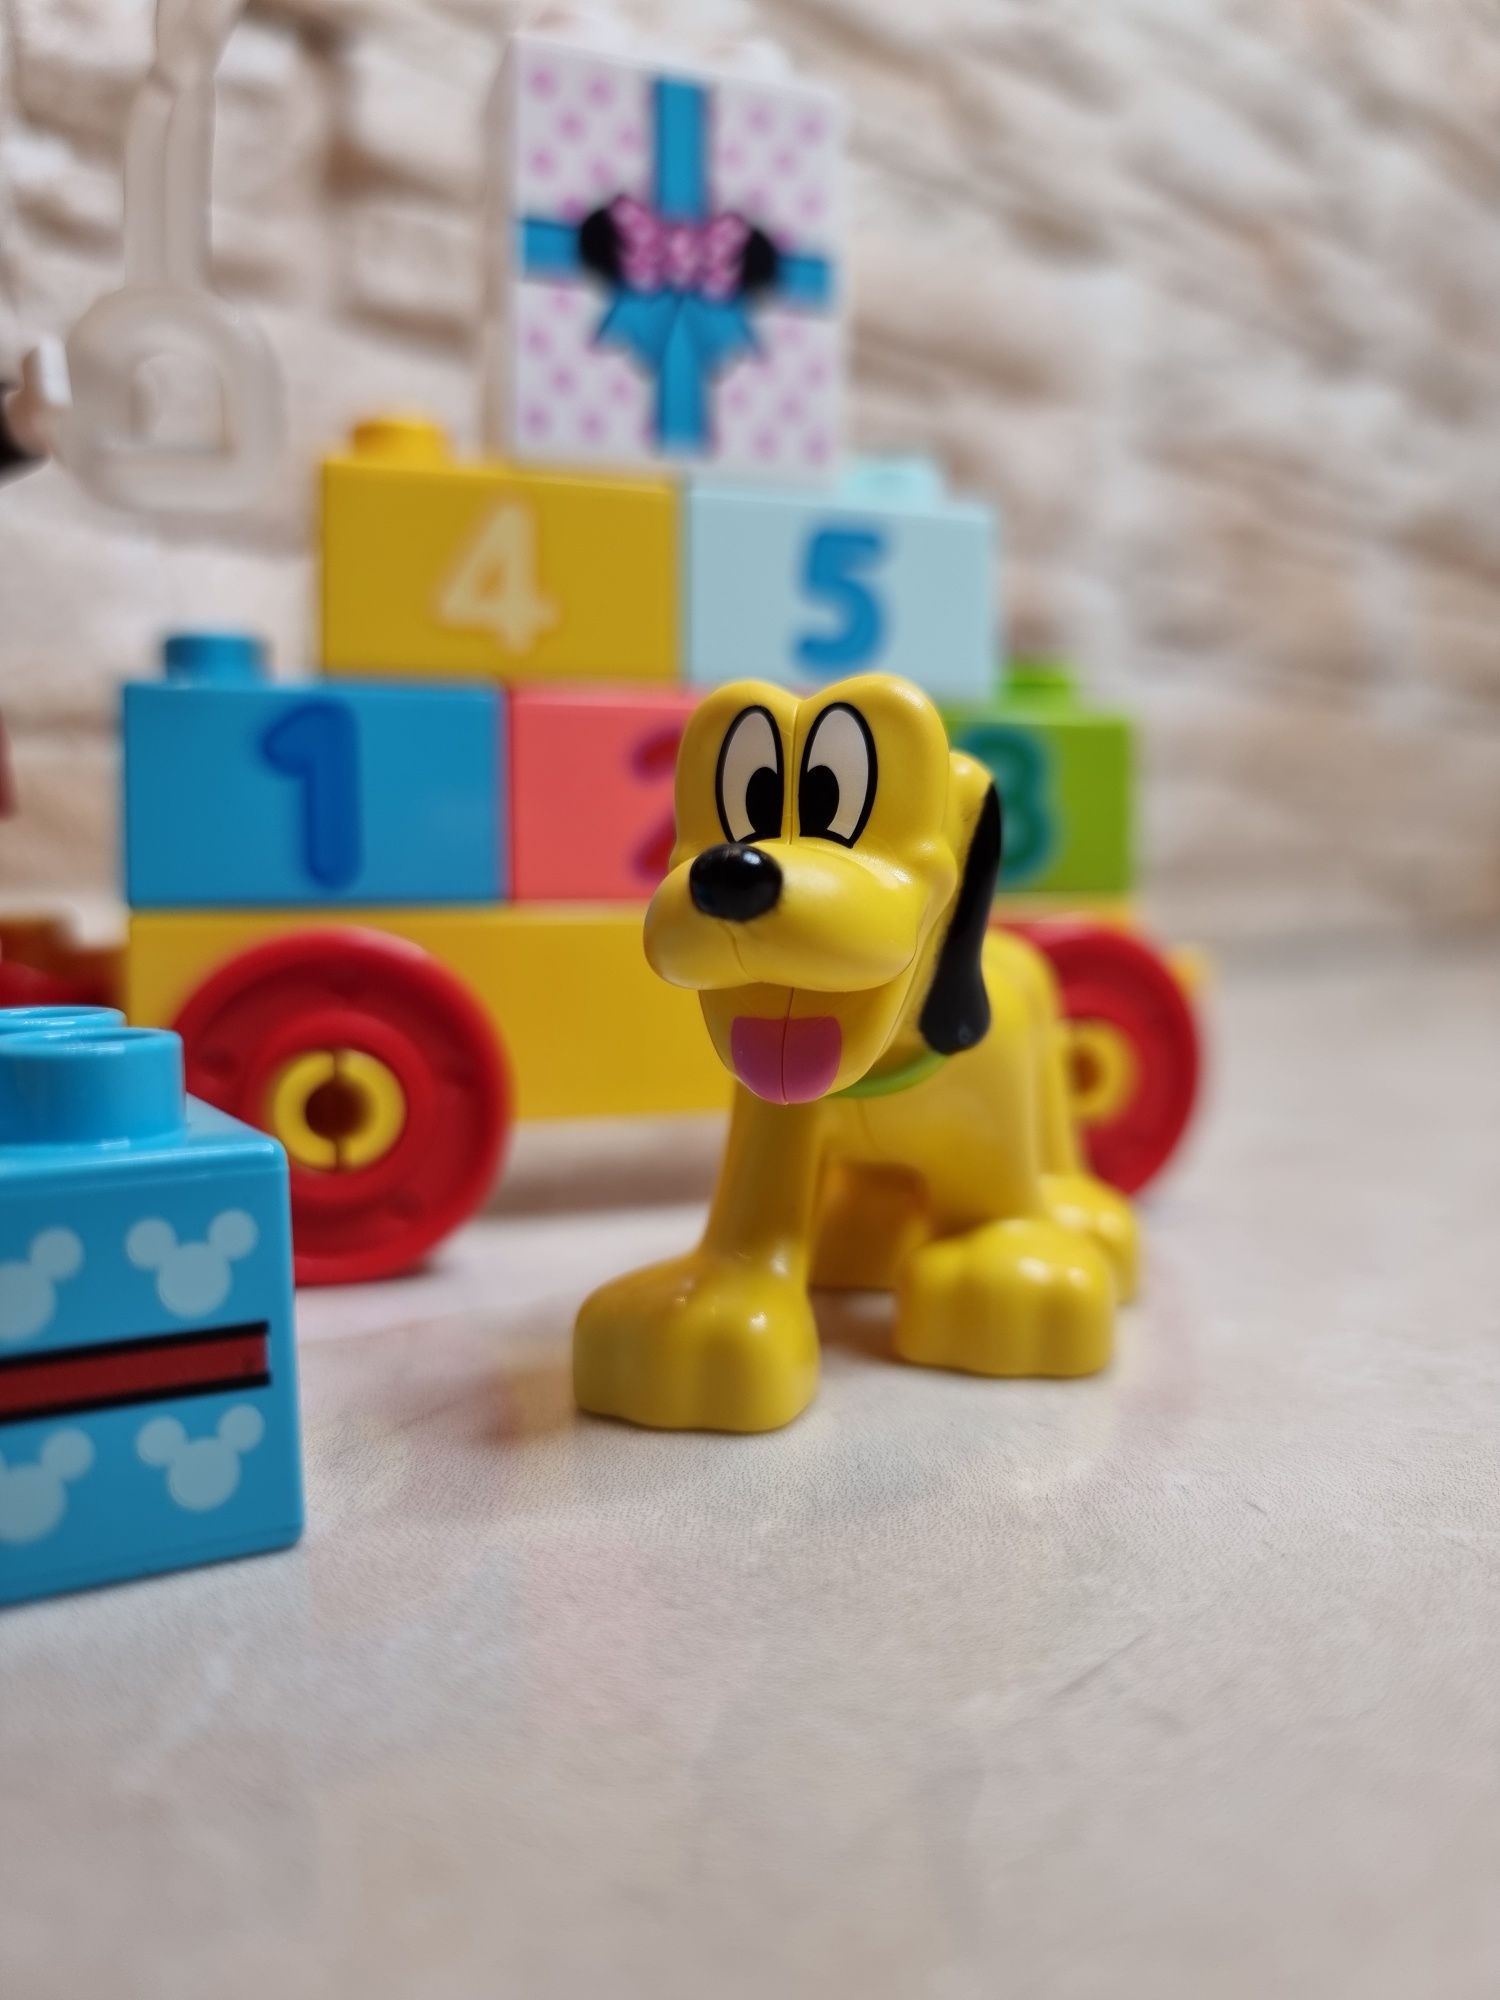 Конструктор LEGO DUPLO Disney Праздничный поезд Микки и Минни